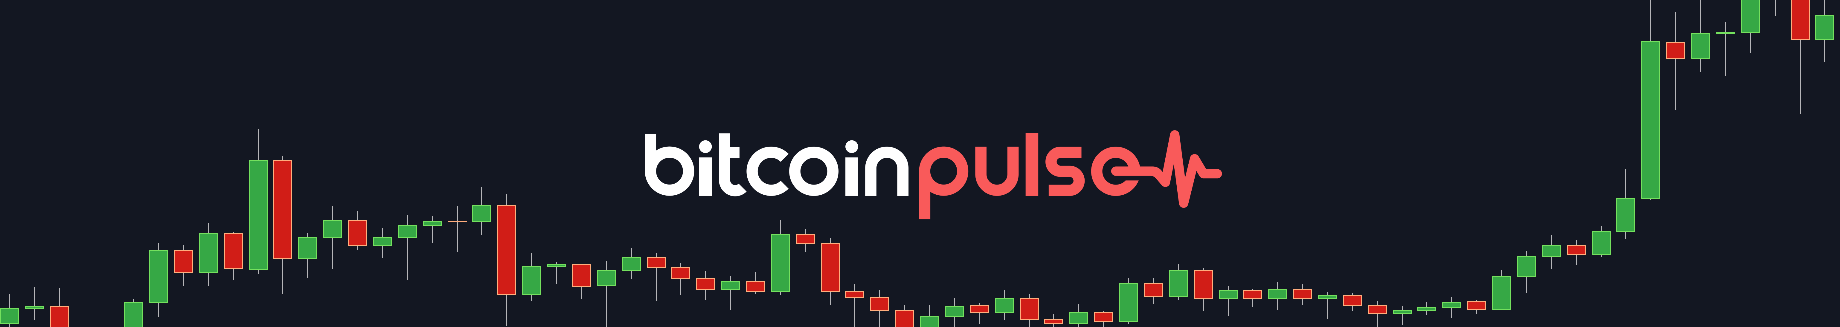 Bitcoin Pulse #116